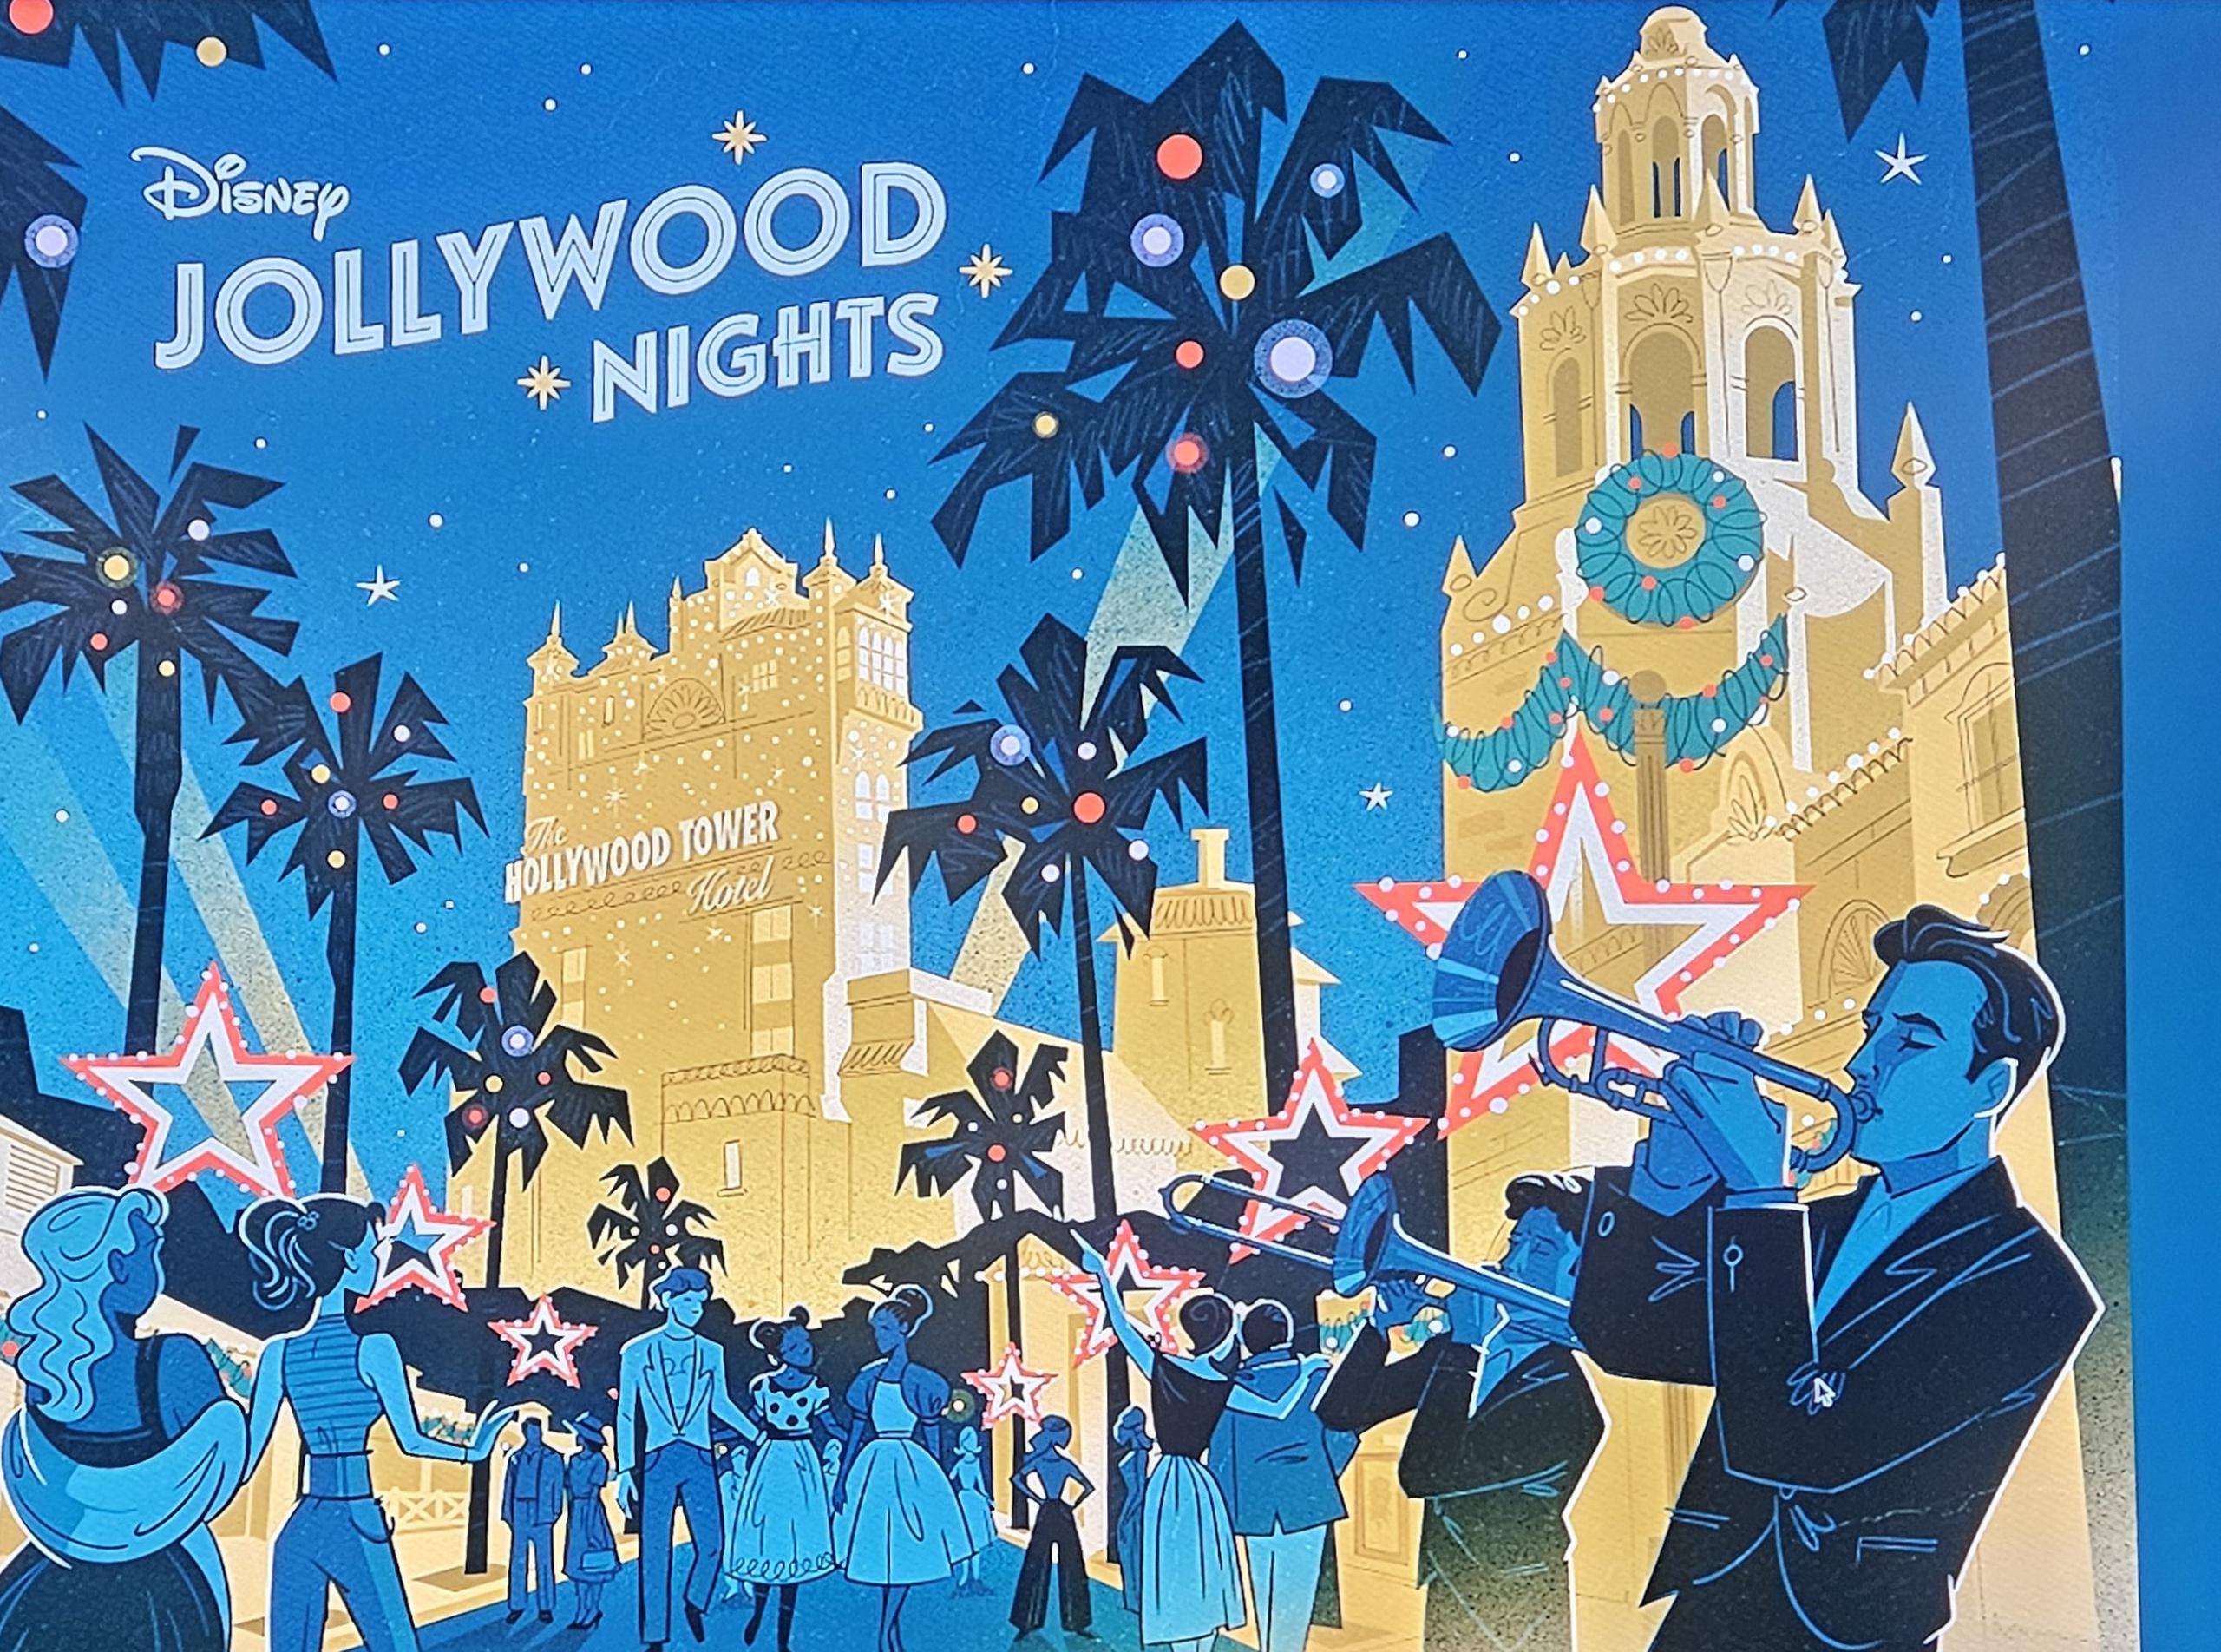 Se realizará en el parque temático Disney’s Hollywood Studios por diez noches del 11 de noviembre al 20 de diciembre.